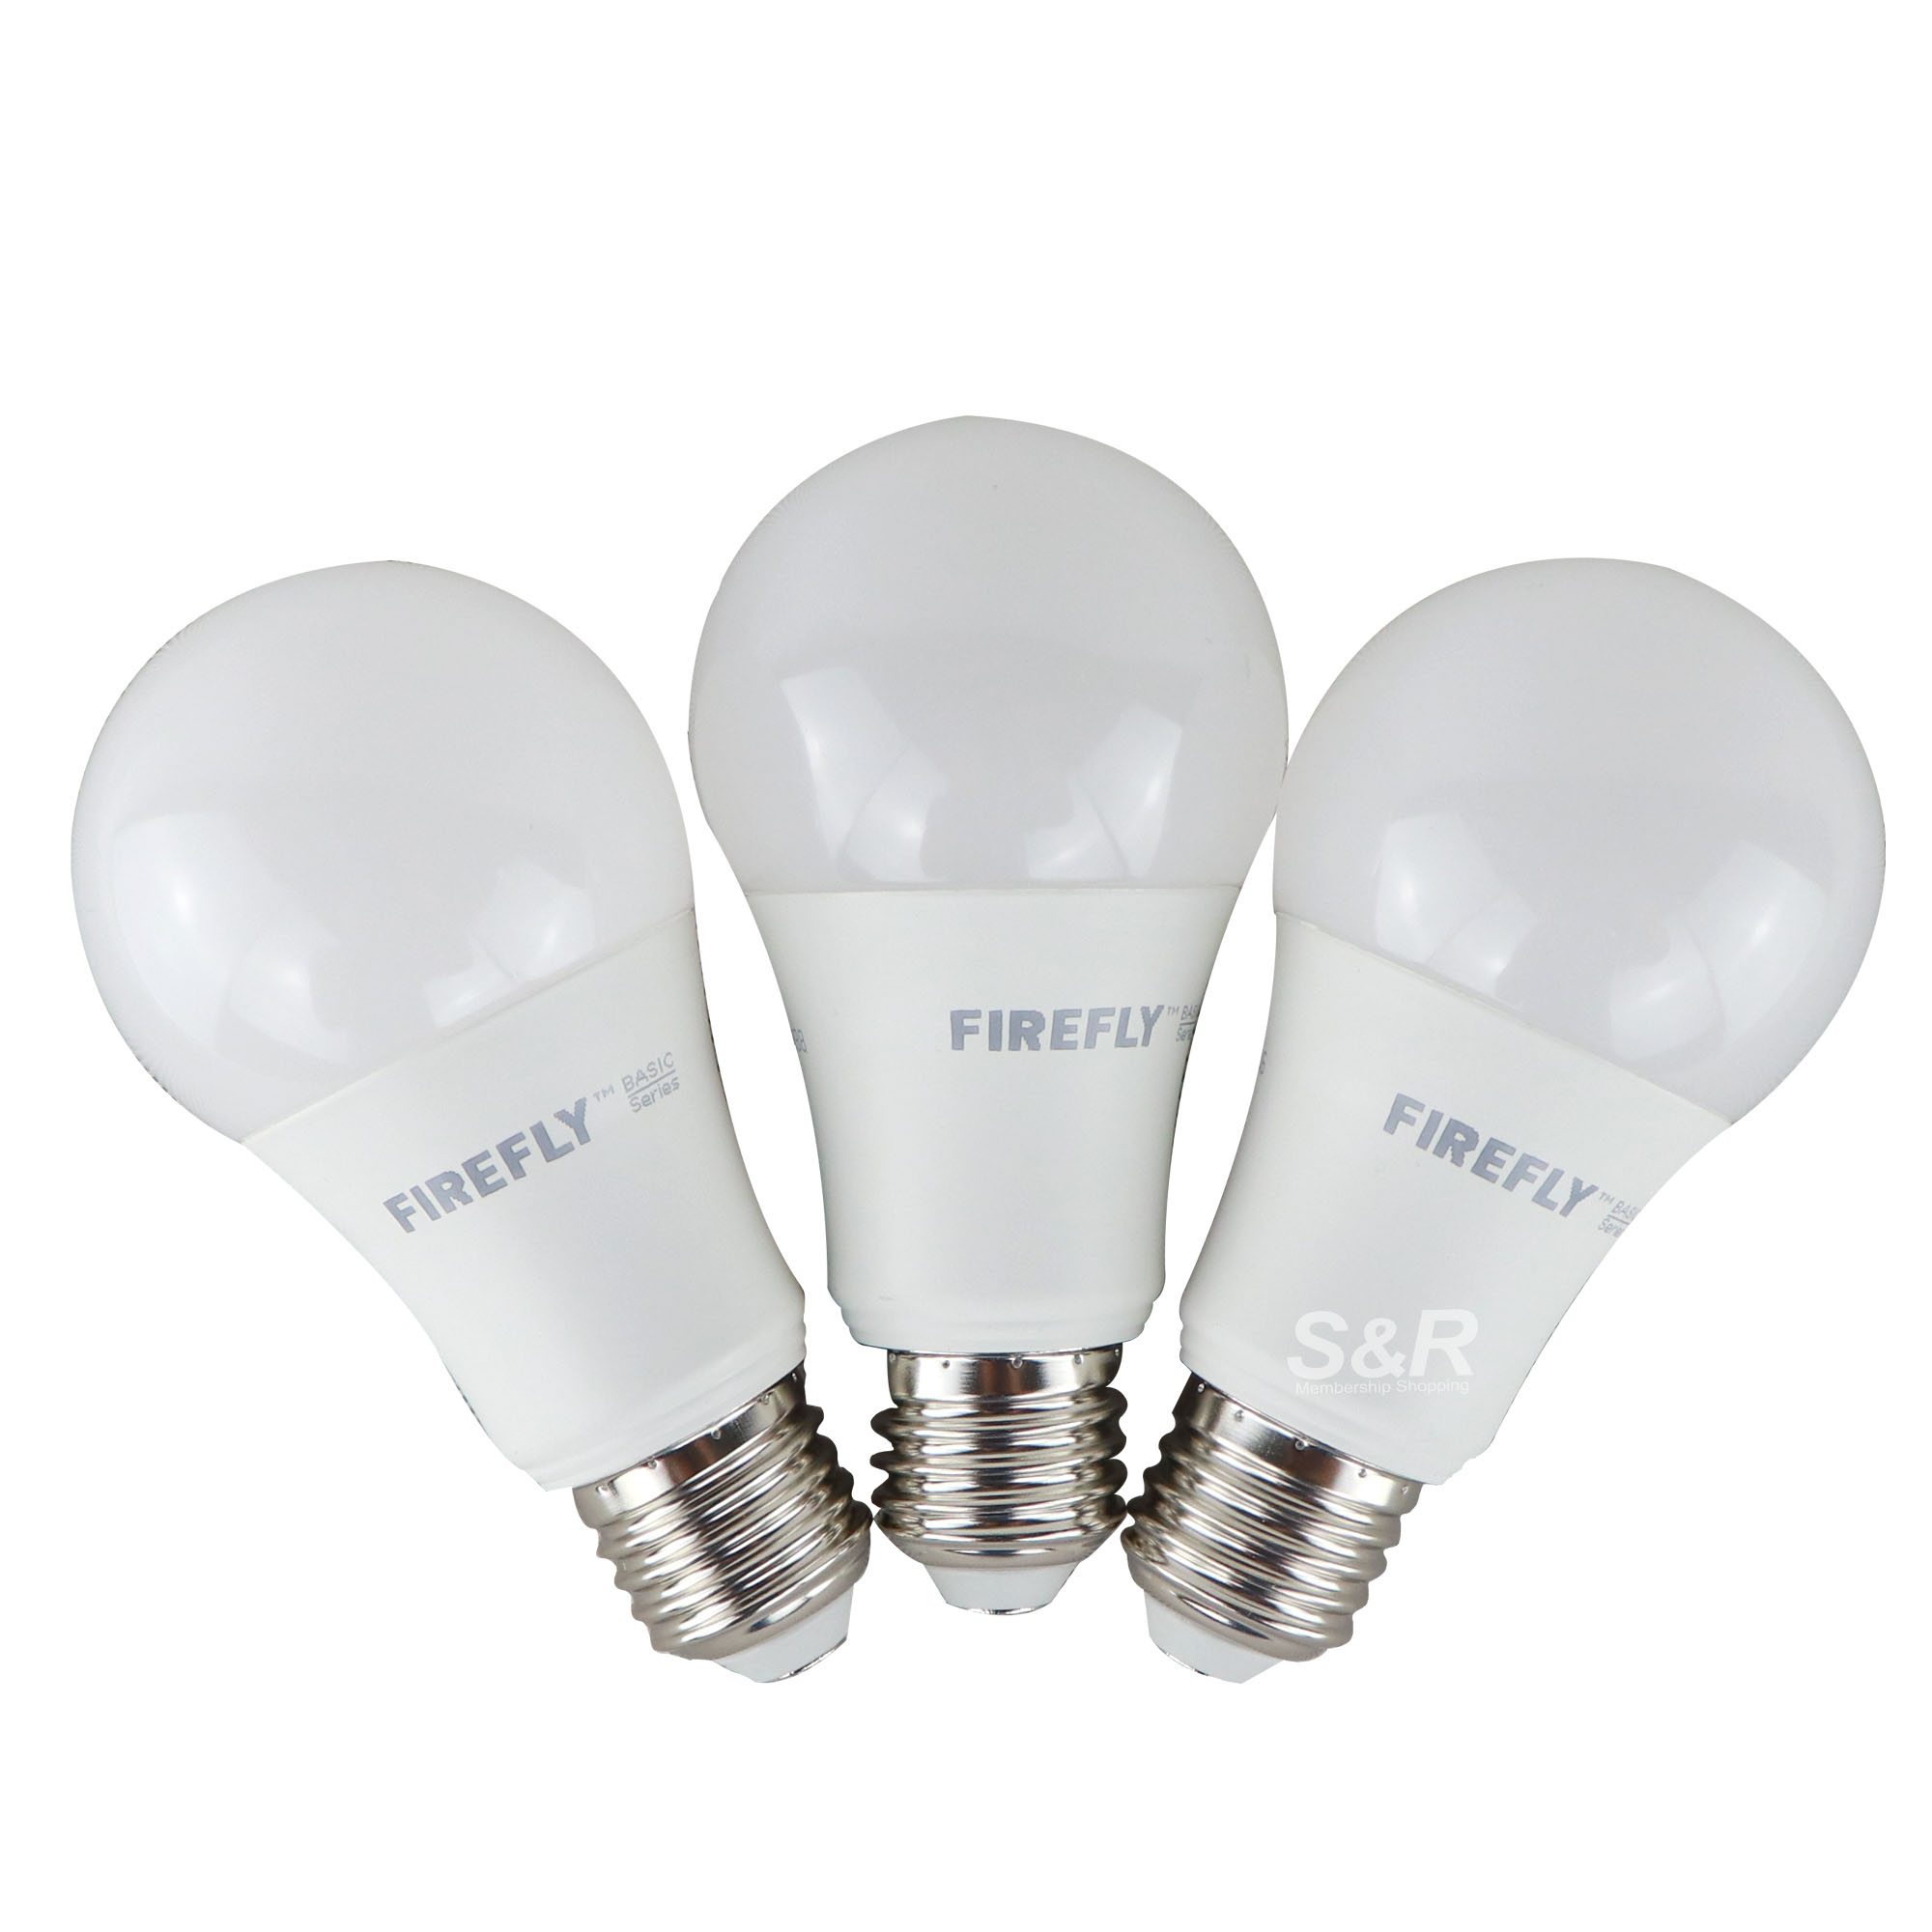 Firefly Basic Light Bulb 11-Watt Value Pack 3pcs